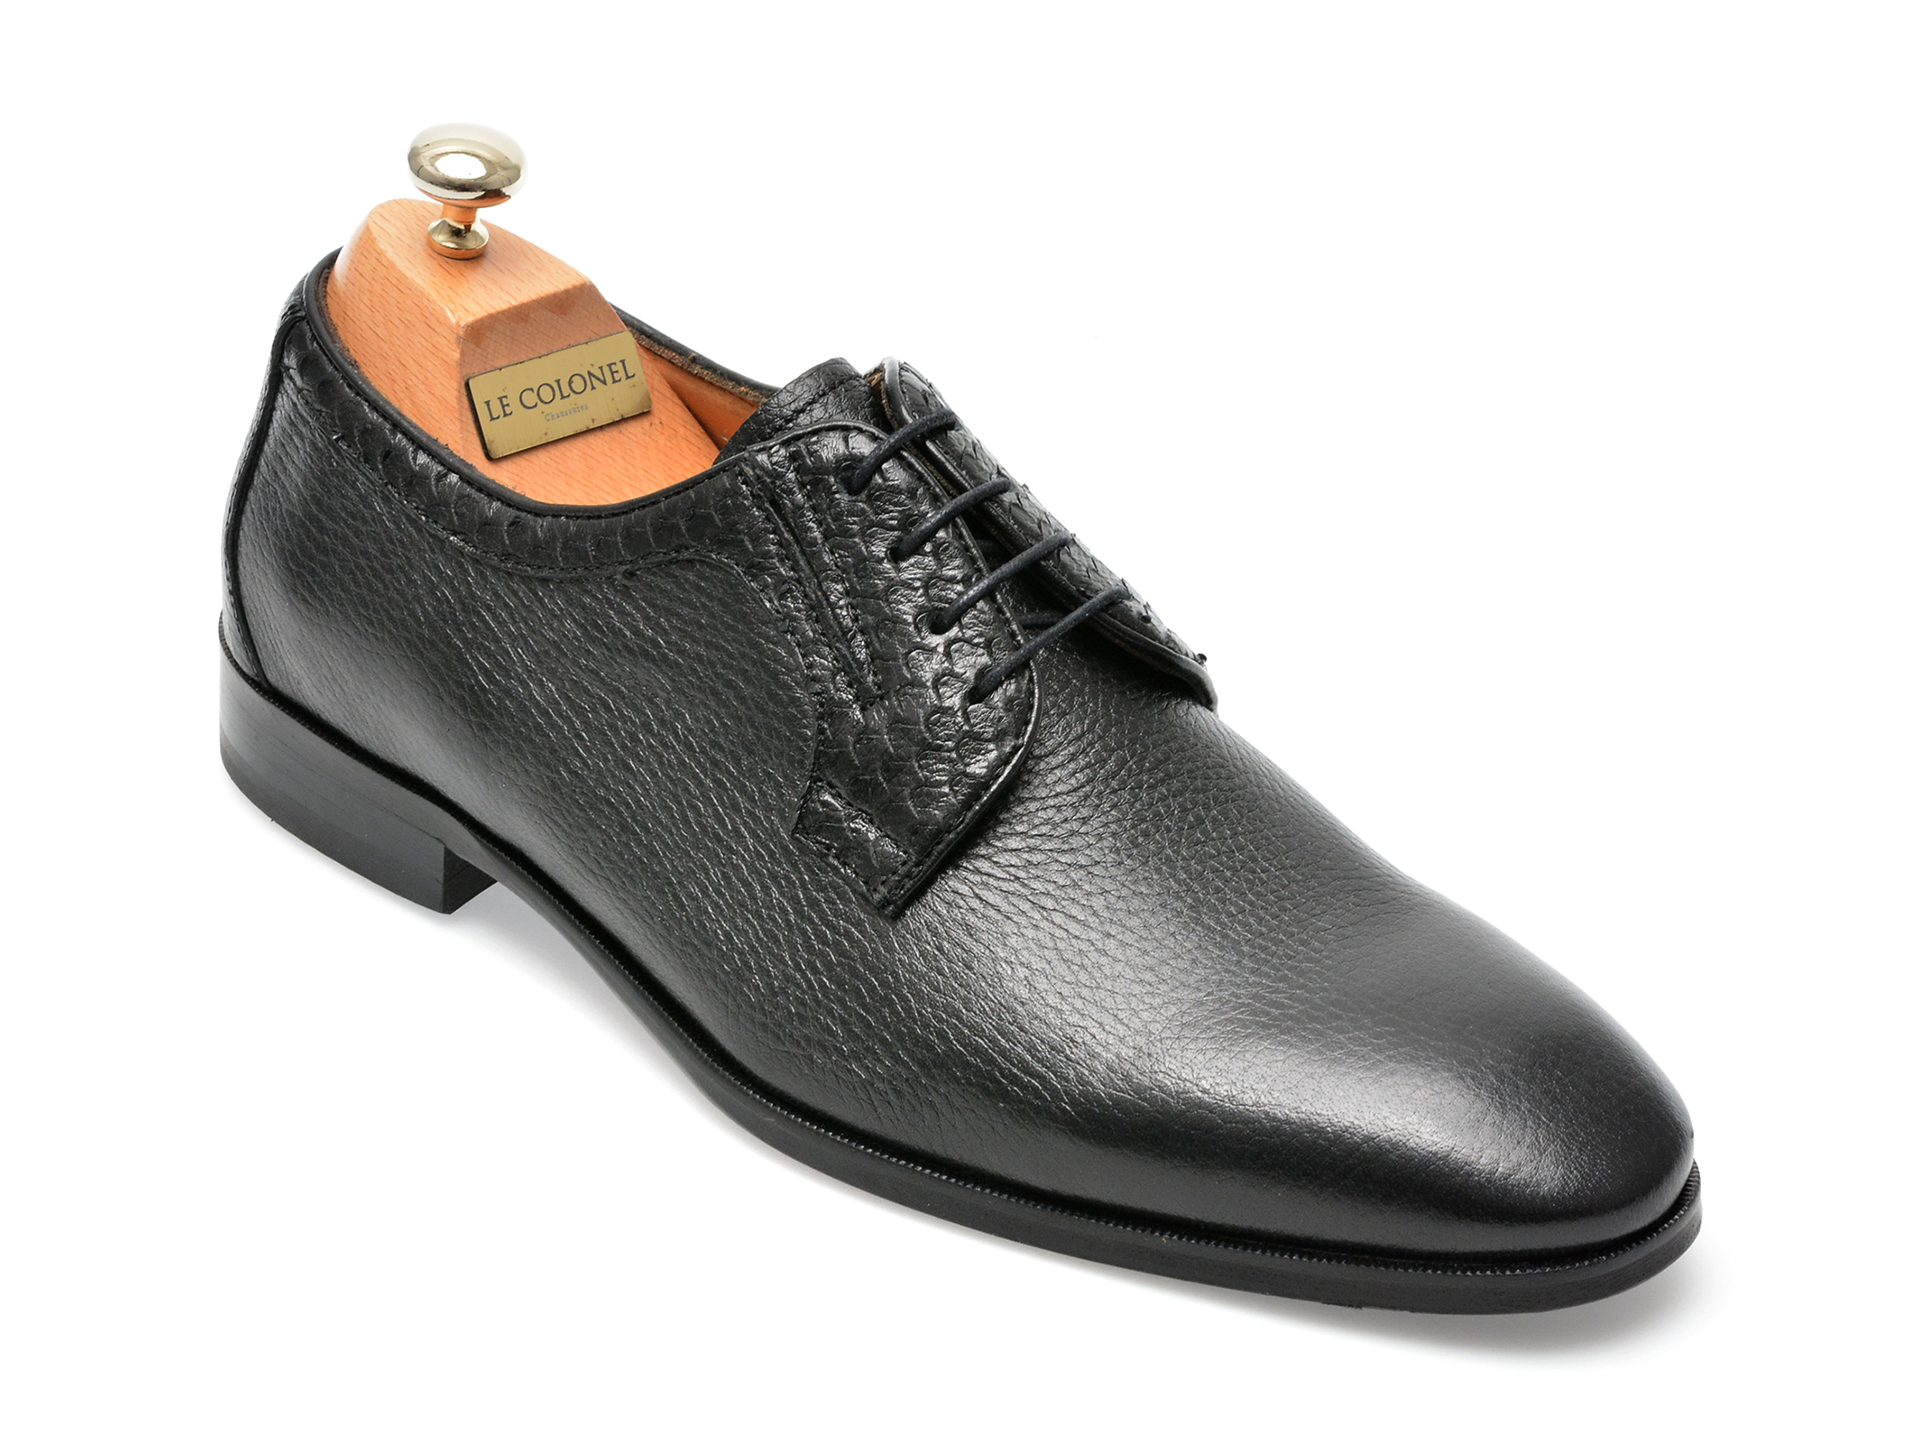 Pantofi LE COLONEL negri, 48711, din piele naturala Le Colonel